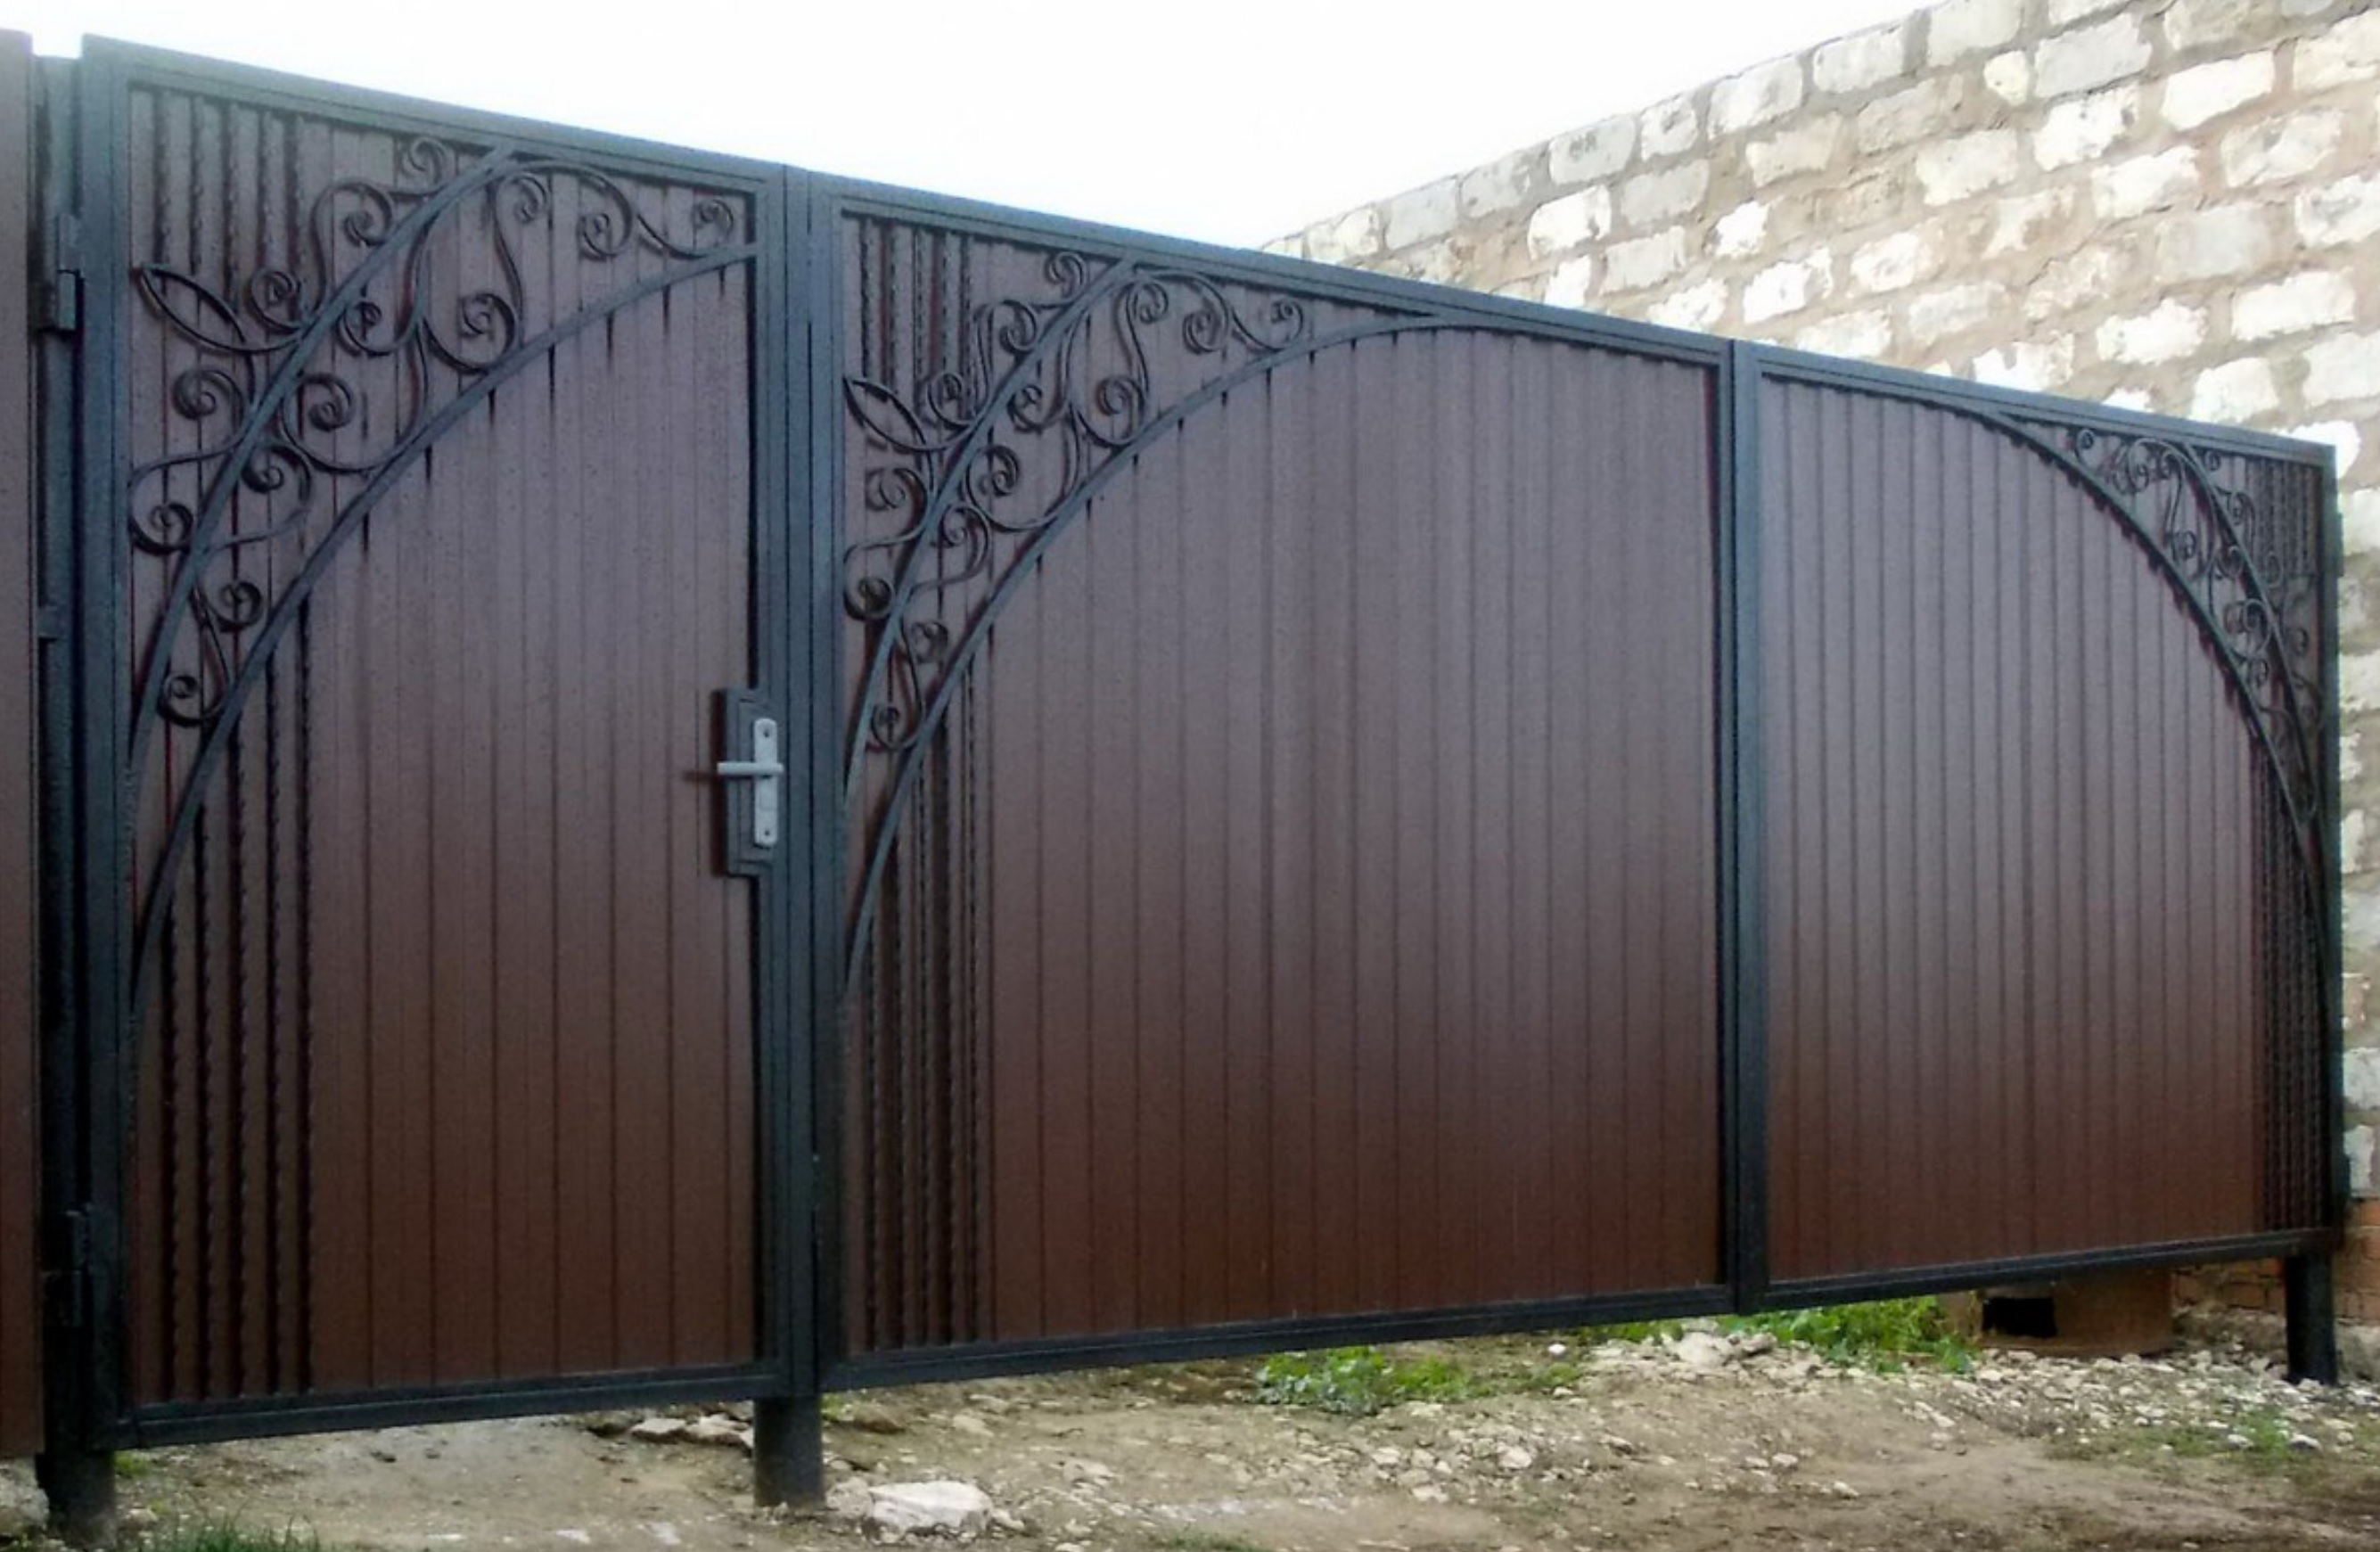 Фото калитка в воротах: Журнал о дизайне интерьеров и ремонте Идеи вашего дома — IVD.ru